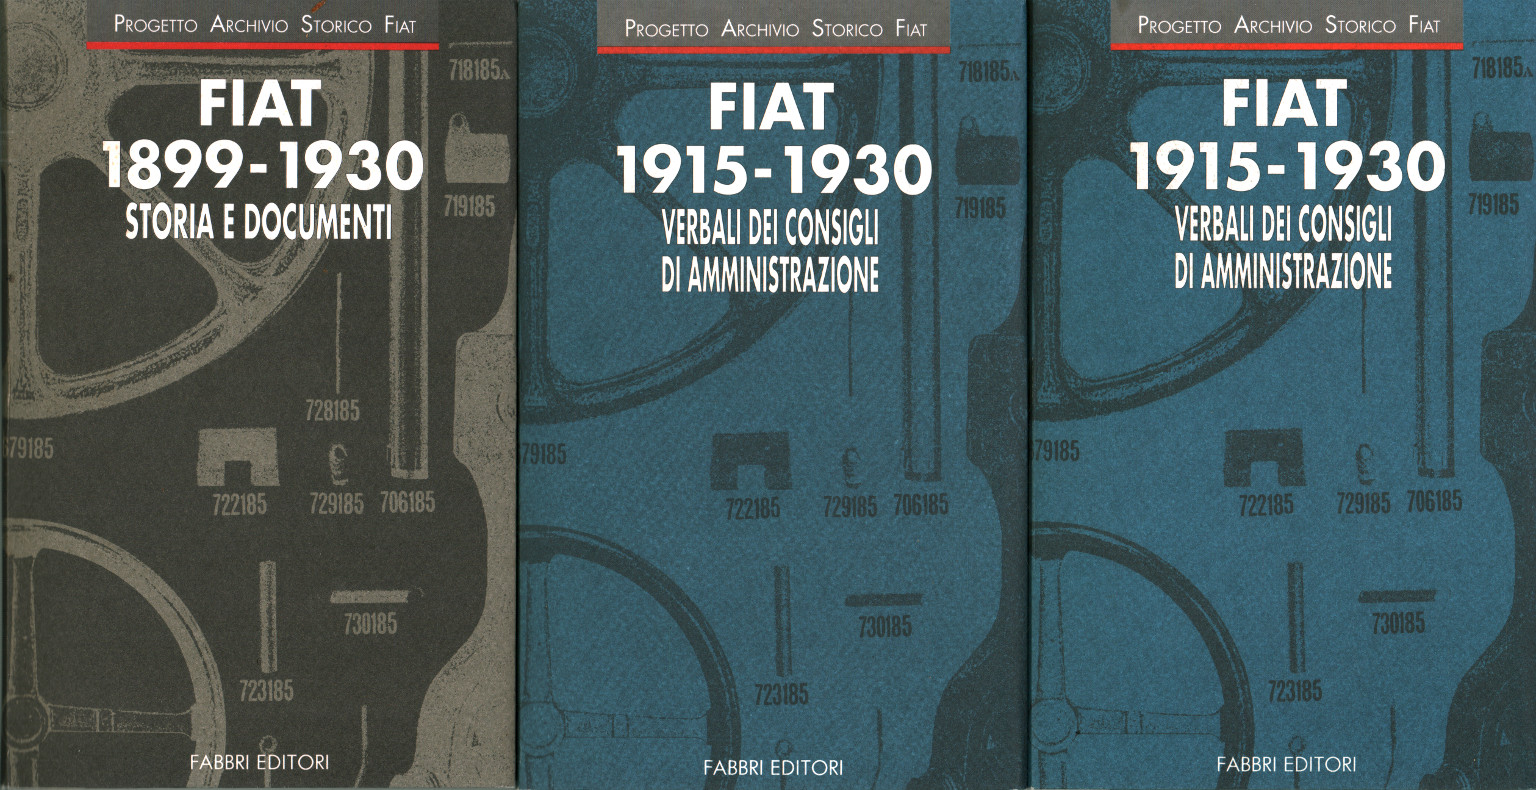 FIAT 1915-1930 Verbali del consiglio di%,FIAT 1915-1930 Verbali del consiglio di%,FIAT 1915-1930 Verbali del consiglio di%